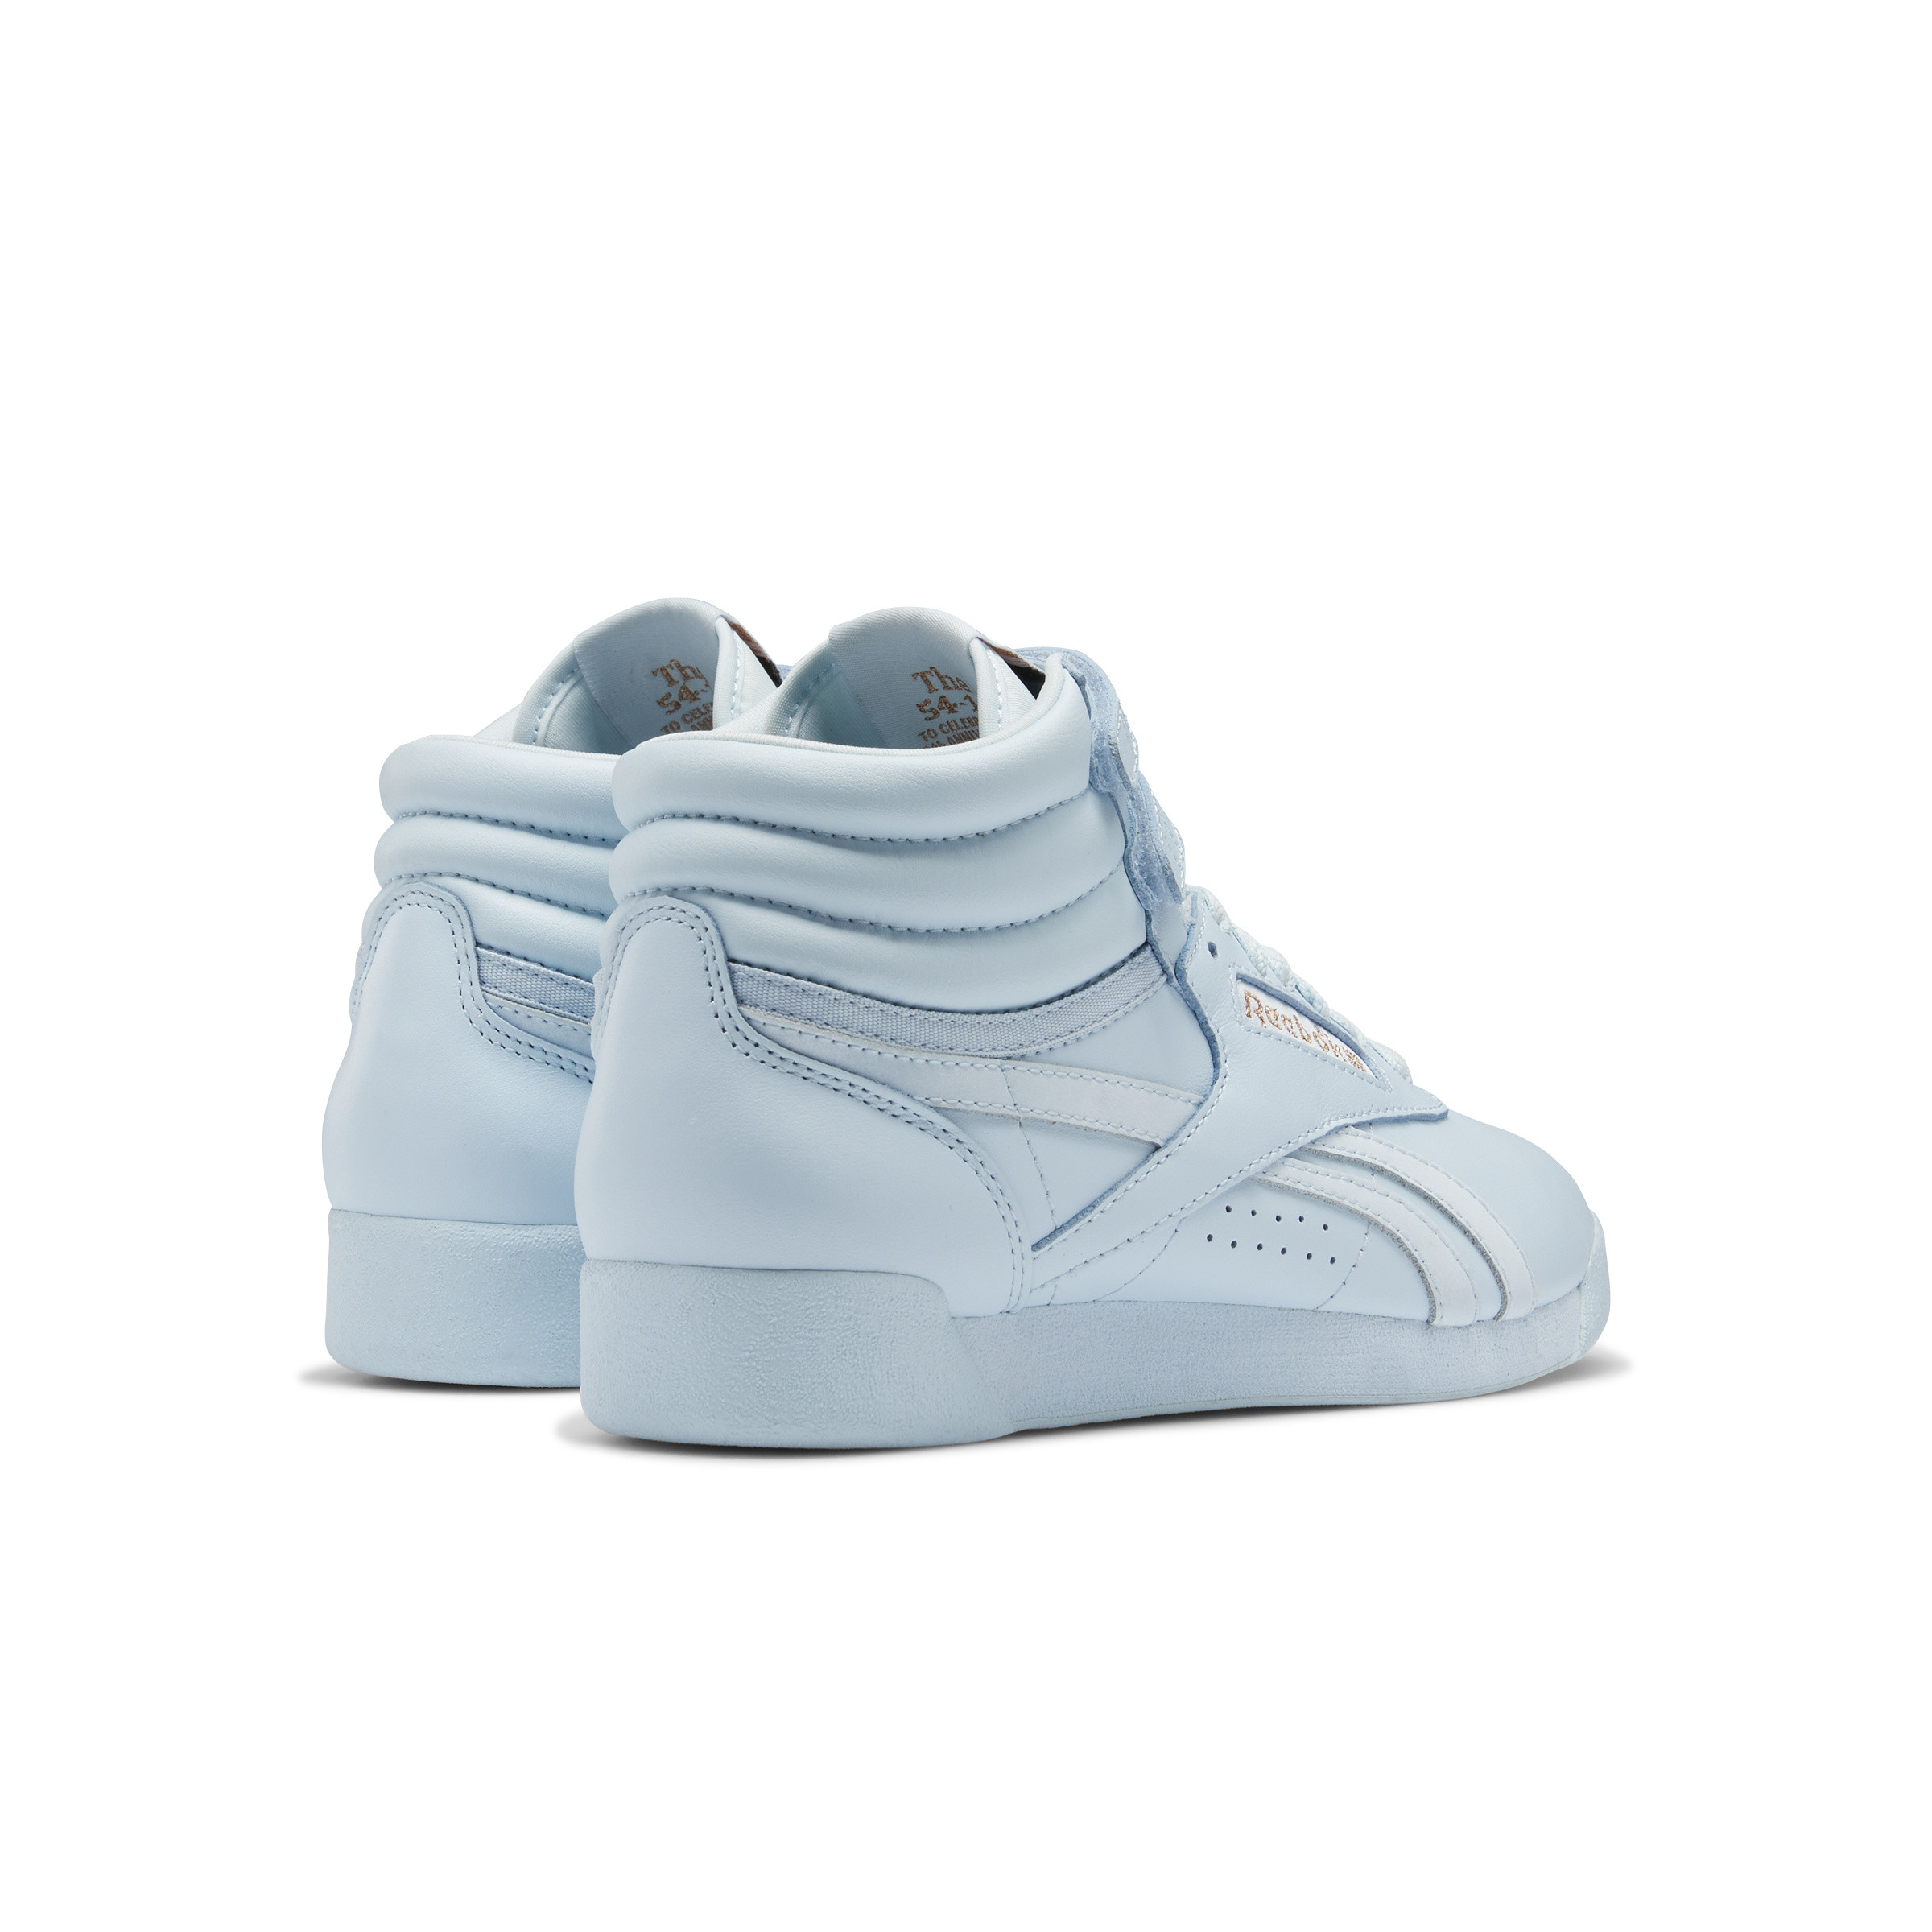 Cardi B Freestyle Hi Shoes, Light Blue, large image number 5